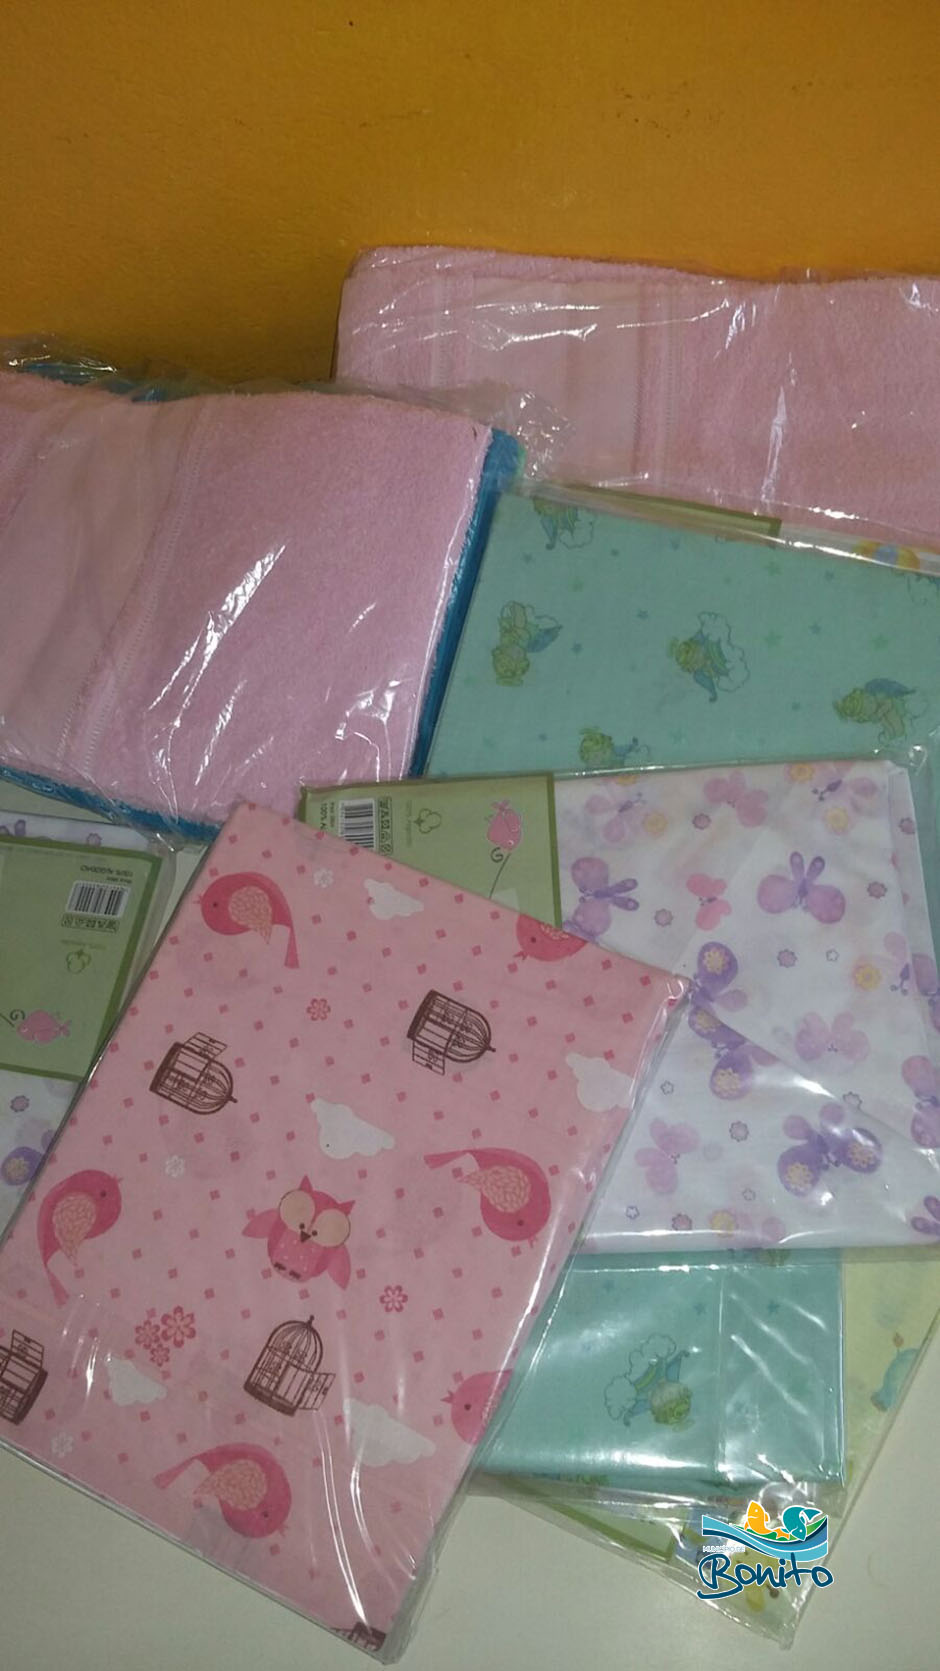 Prefeitura de Bonito realiza entrega de jogos de lençóis e toalhas novas para os CEI’s